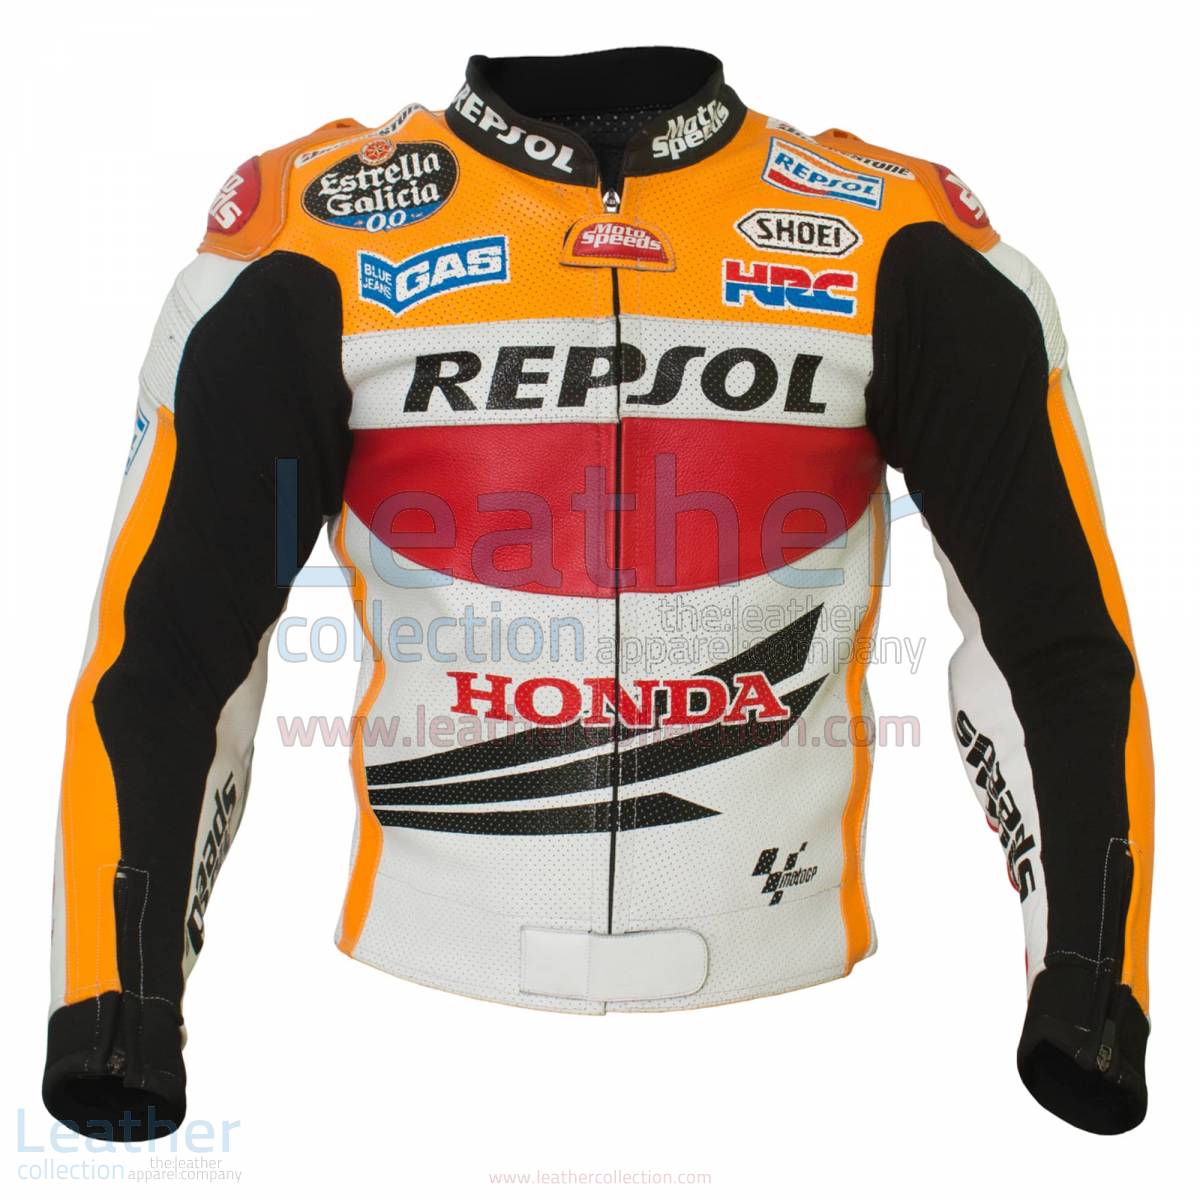 Honda Repsol 2013 Marquez HRC racing jacket